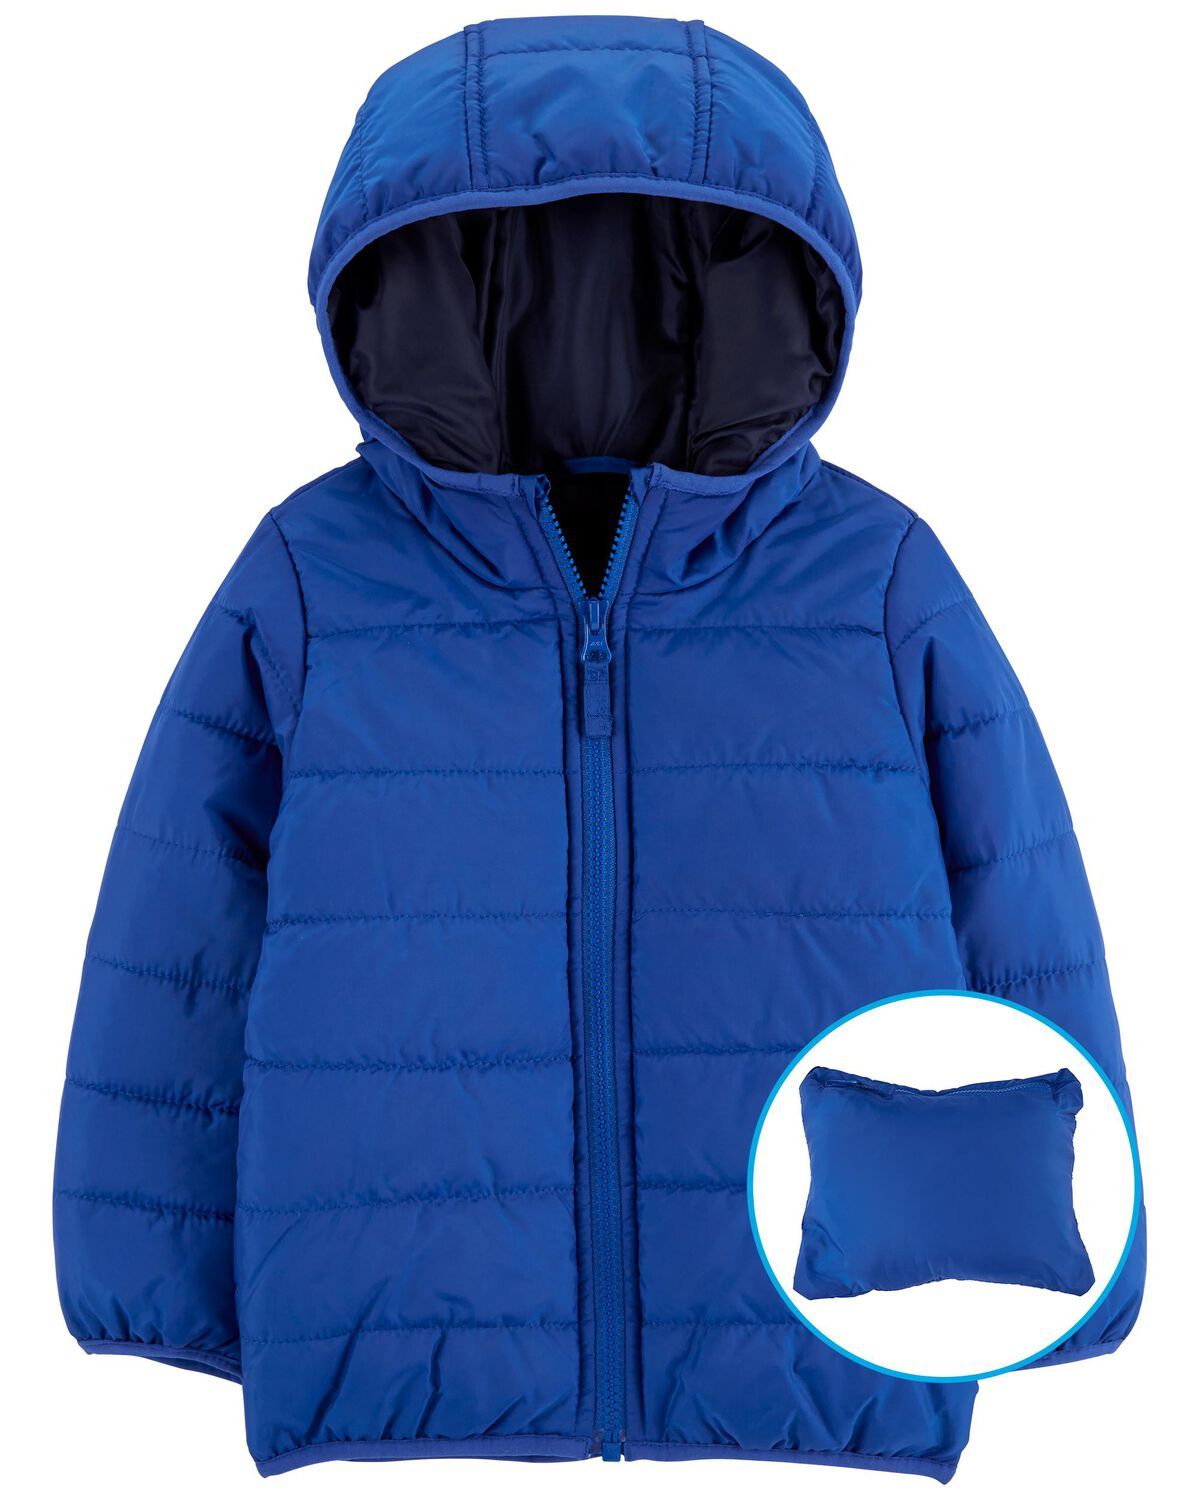 Blue Toddler Packable Puffer Jacket | carters.com | Carter's